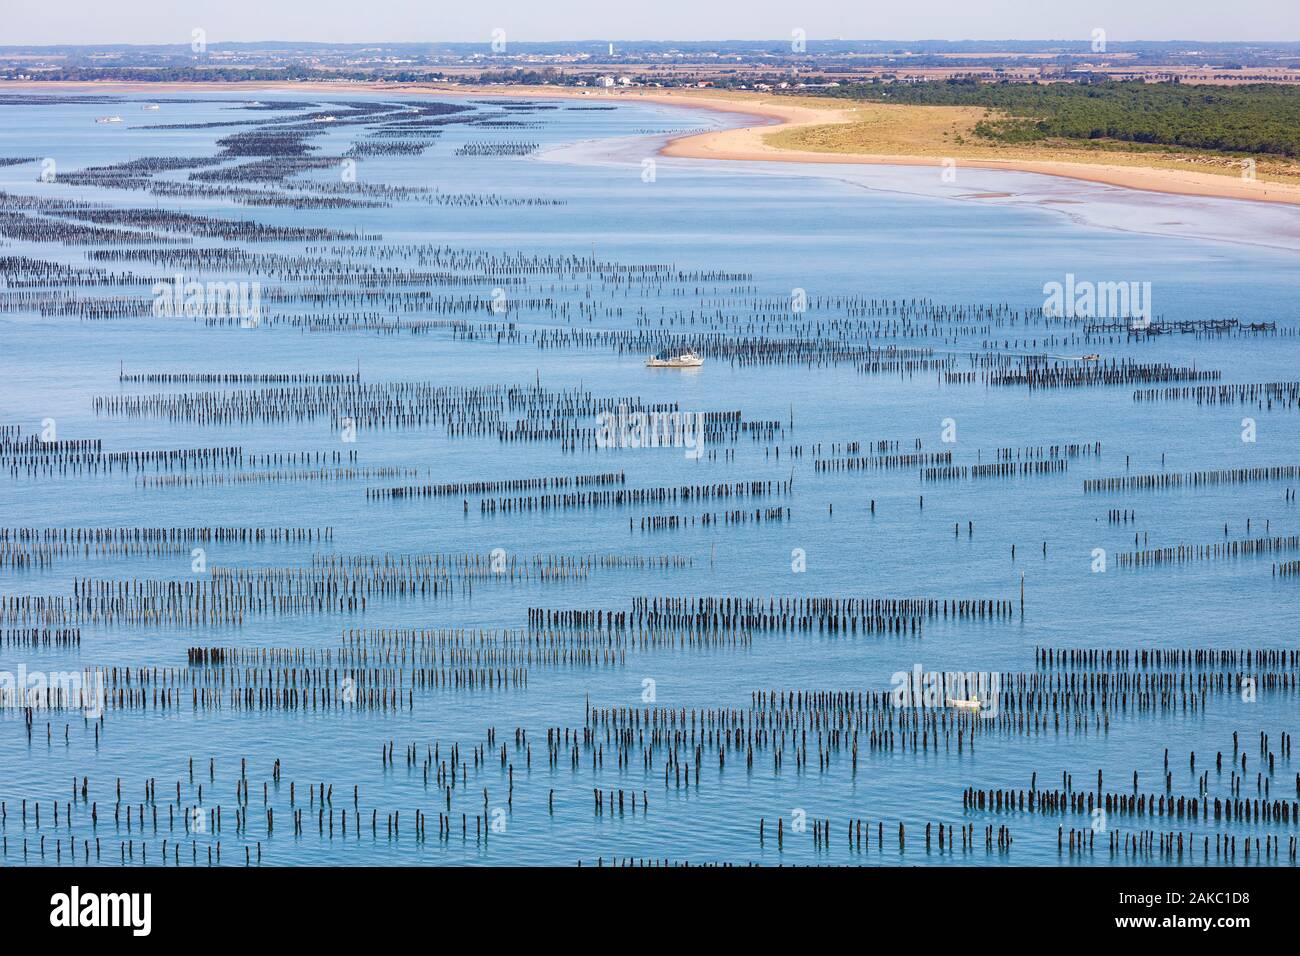 Francia, Vendee, La Faute sur Mer, le cozze barche in mitilicoltura (vista aerea) Foto Stock